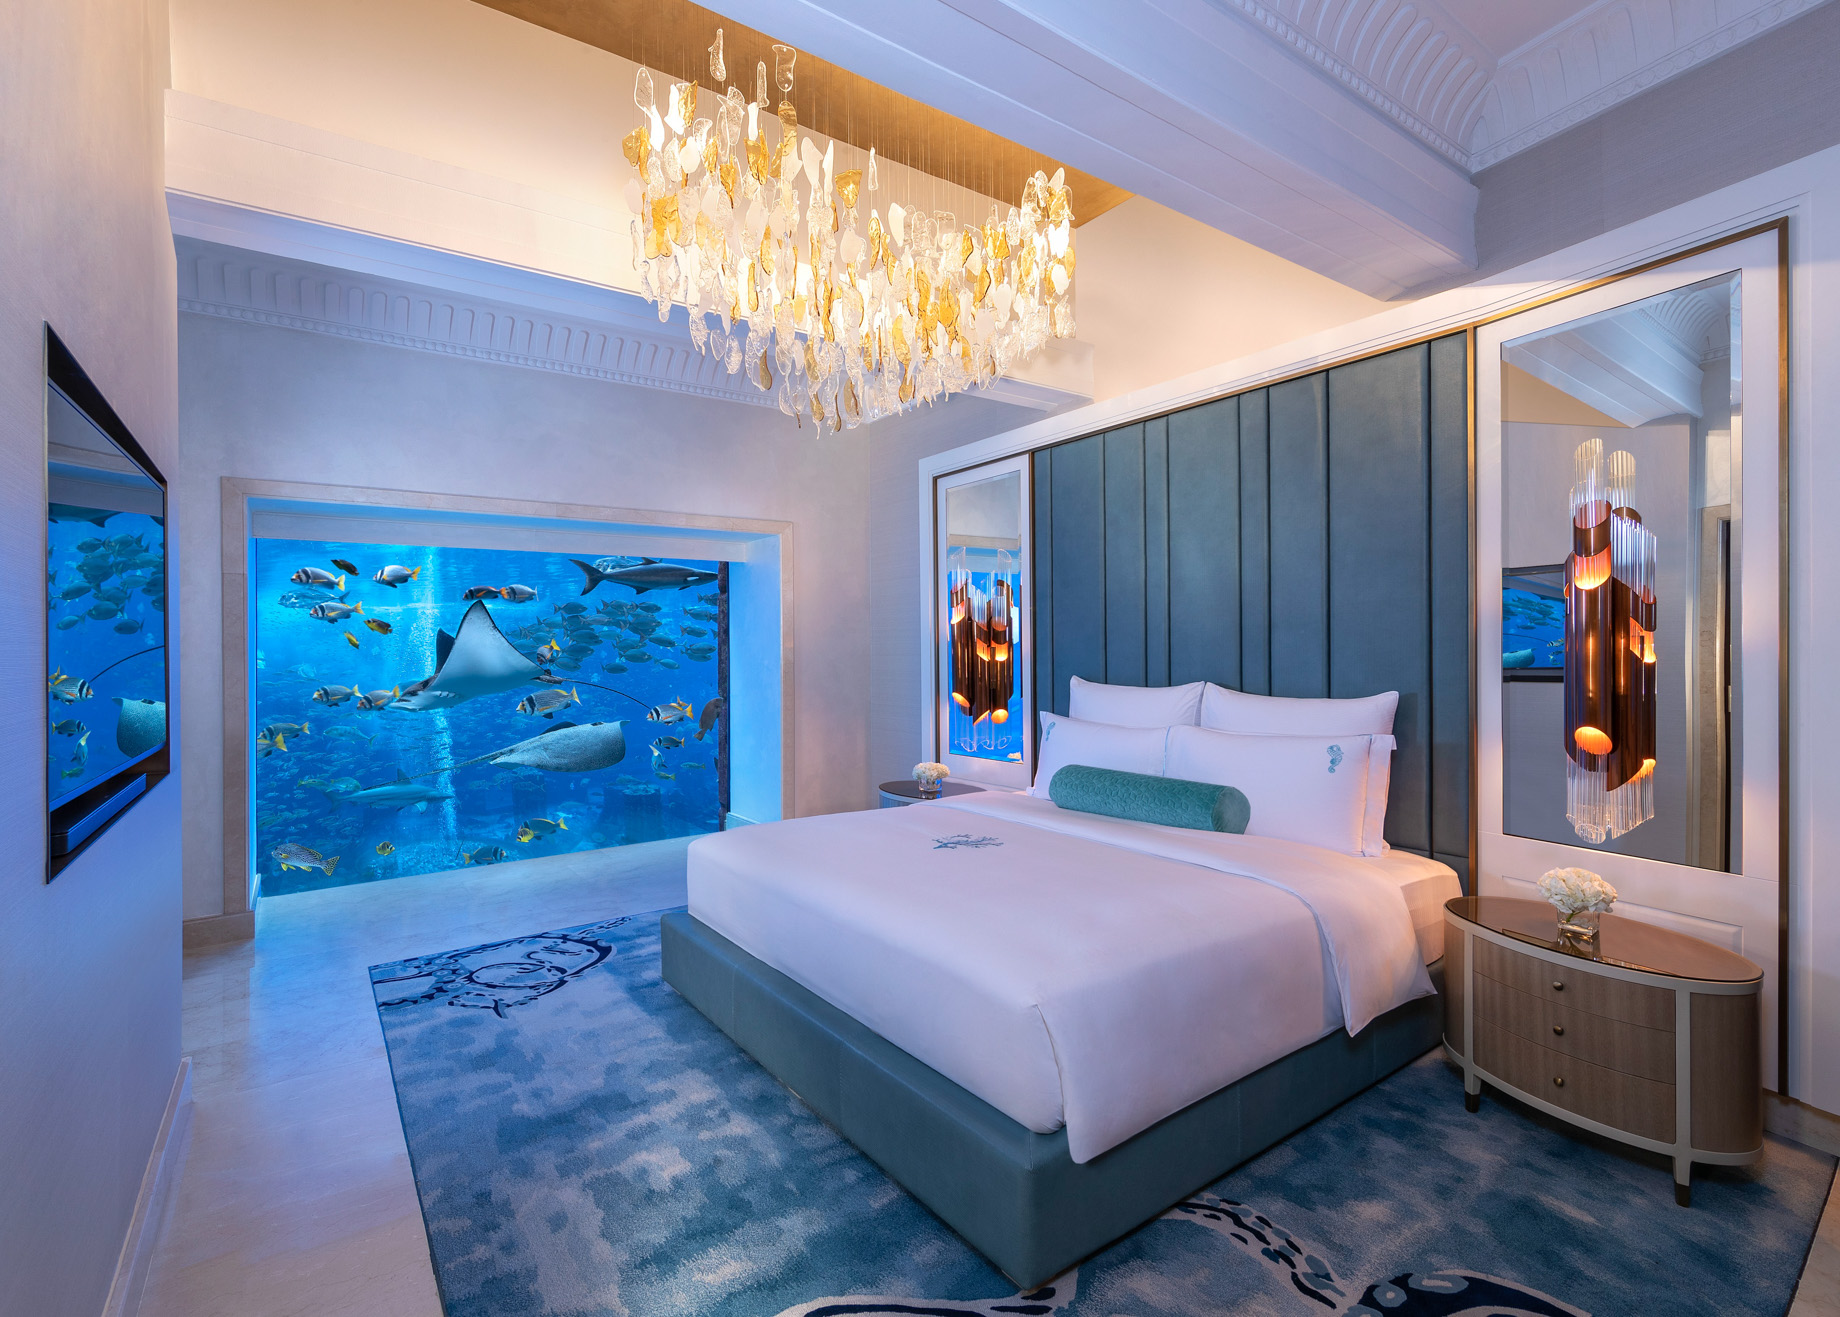 Atlantis The Palm Resort – Crescent Rd, Dubai, UAE – Underwater Suite Bedroom